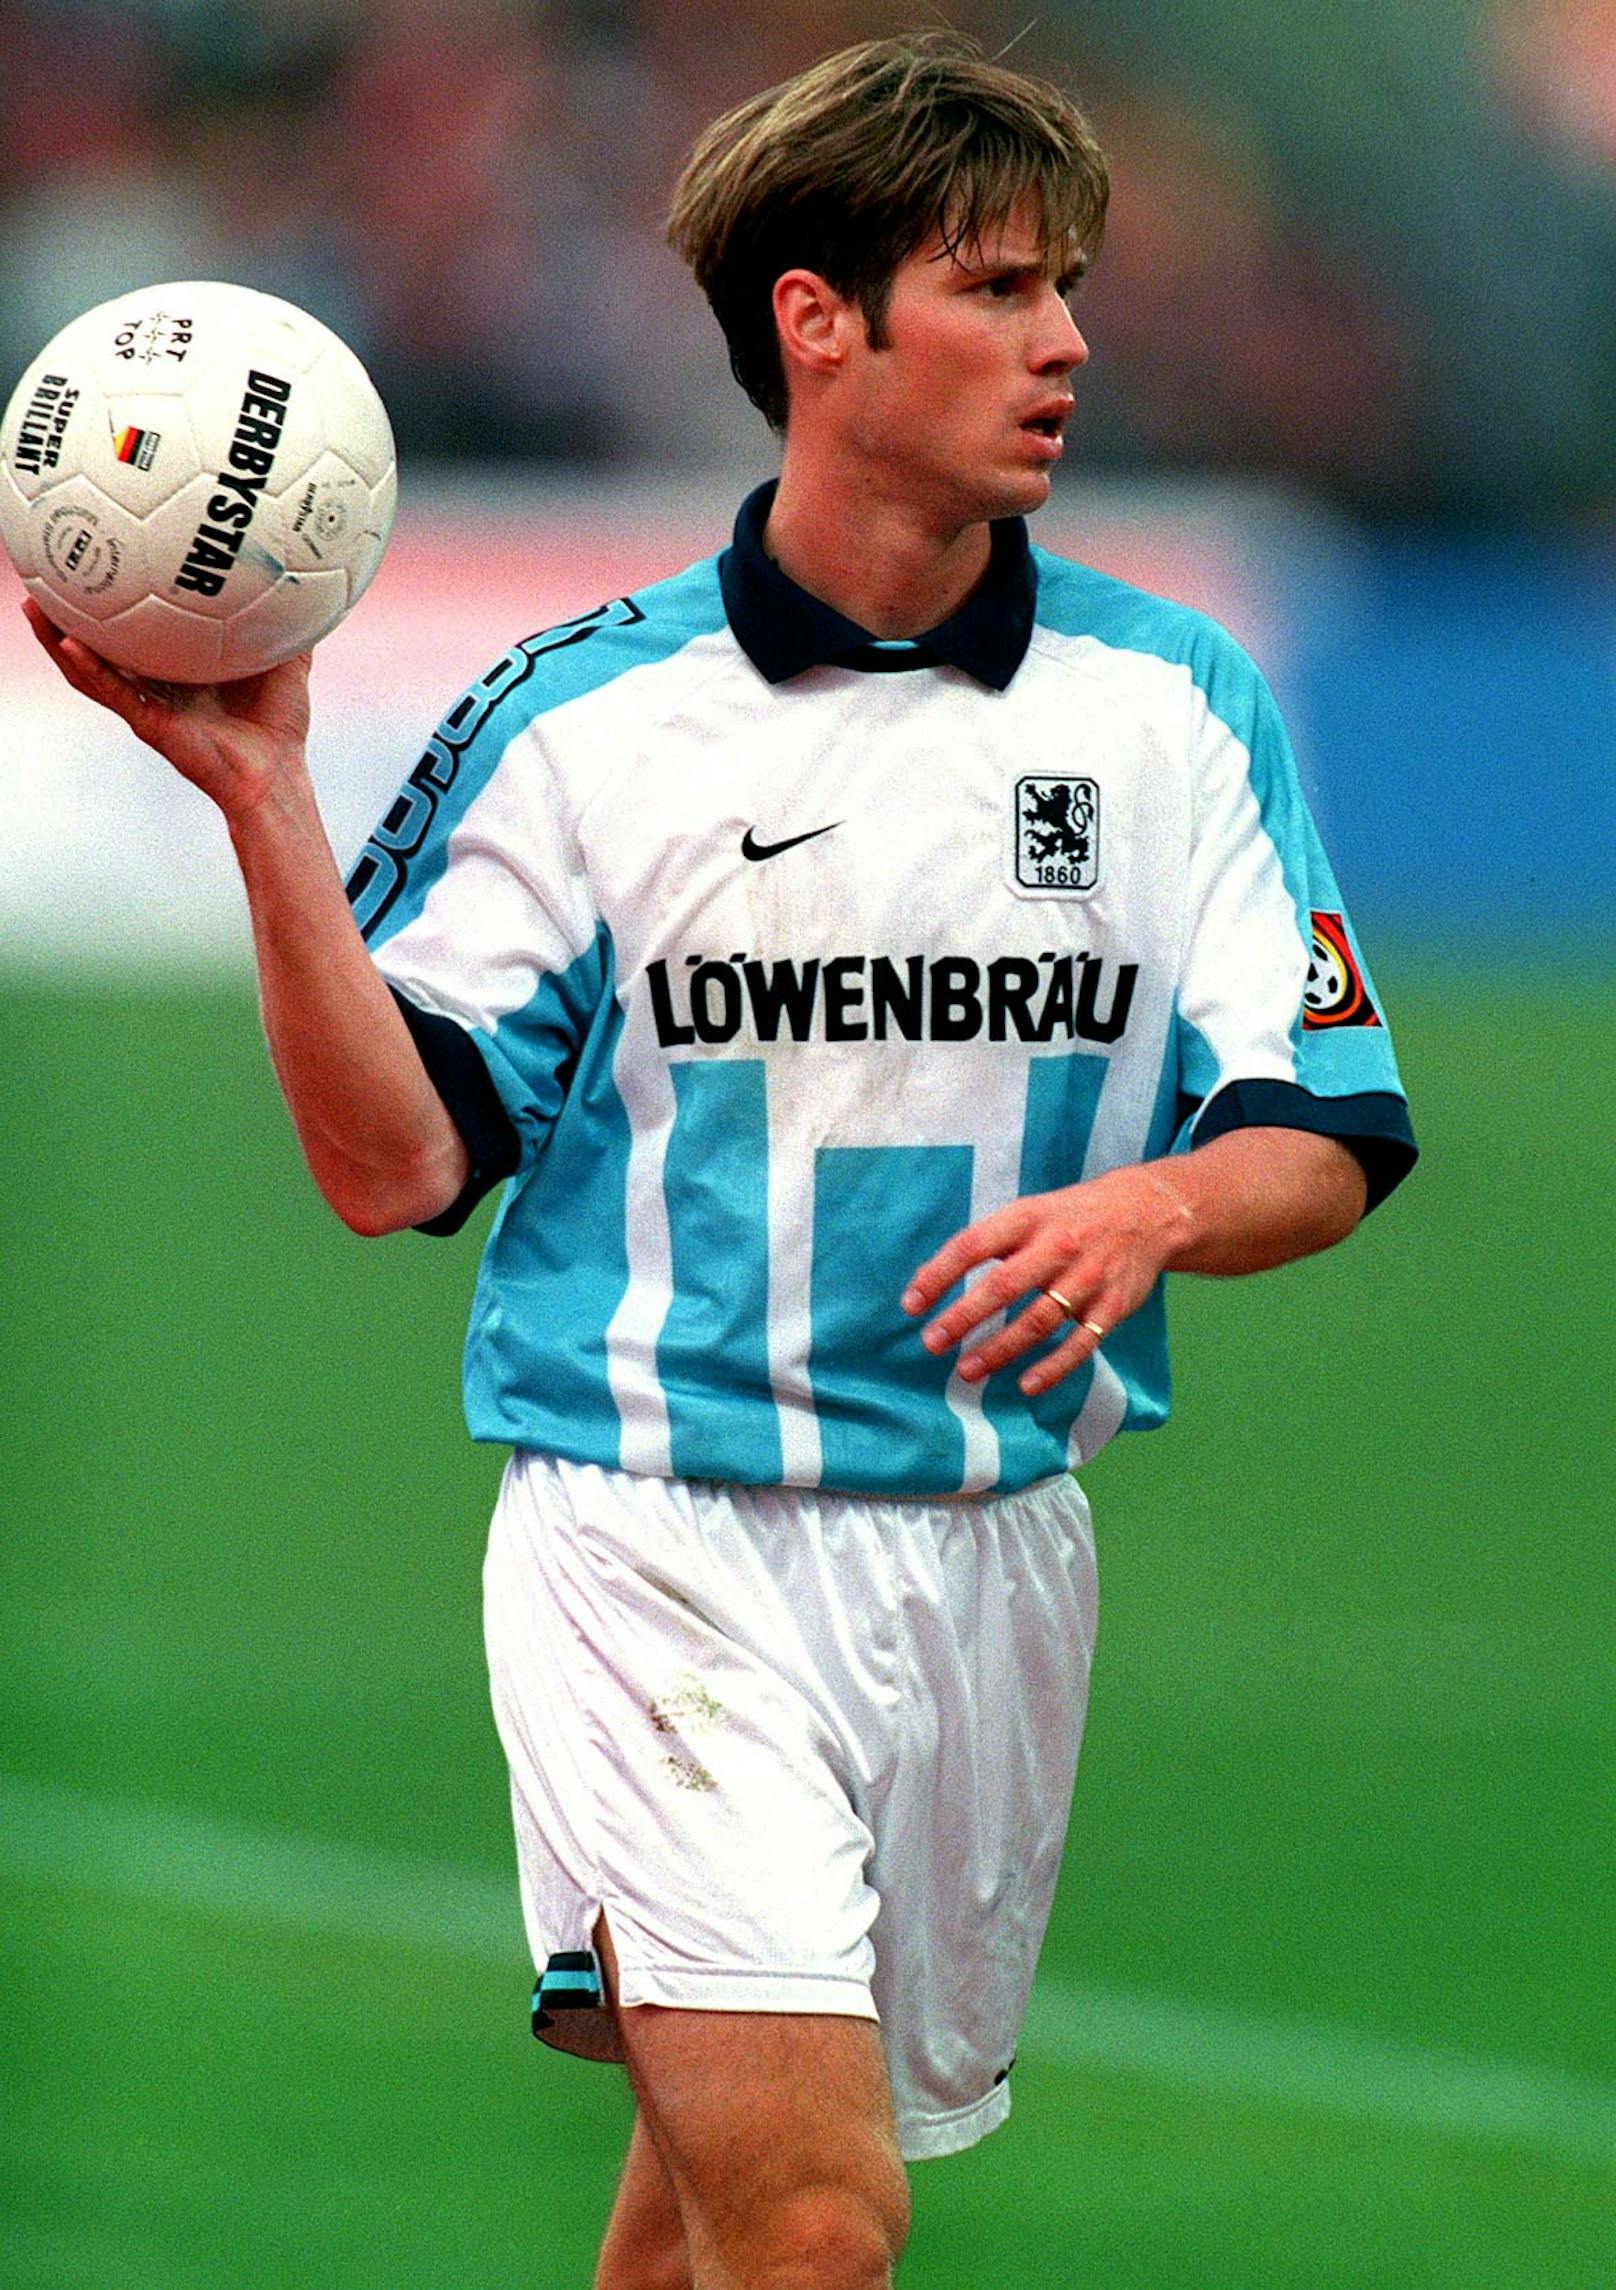 <strong>Harald Cerny: </strong>Stand 1993/94 im Meisterkader der Bayern, schrieb aber vor allem als 1860-Spieler Geschichte. Mit 308 Einsätzen nach wie vor der Rekordmann der "Löwen".